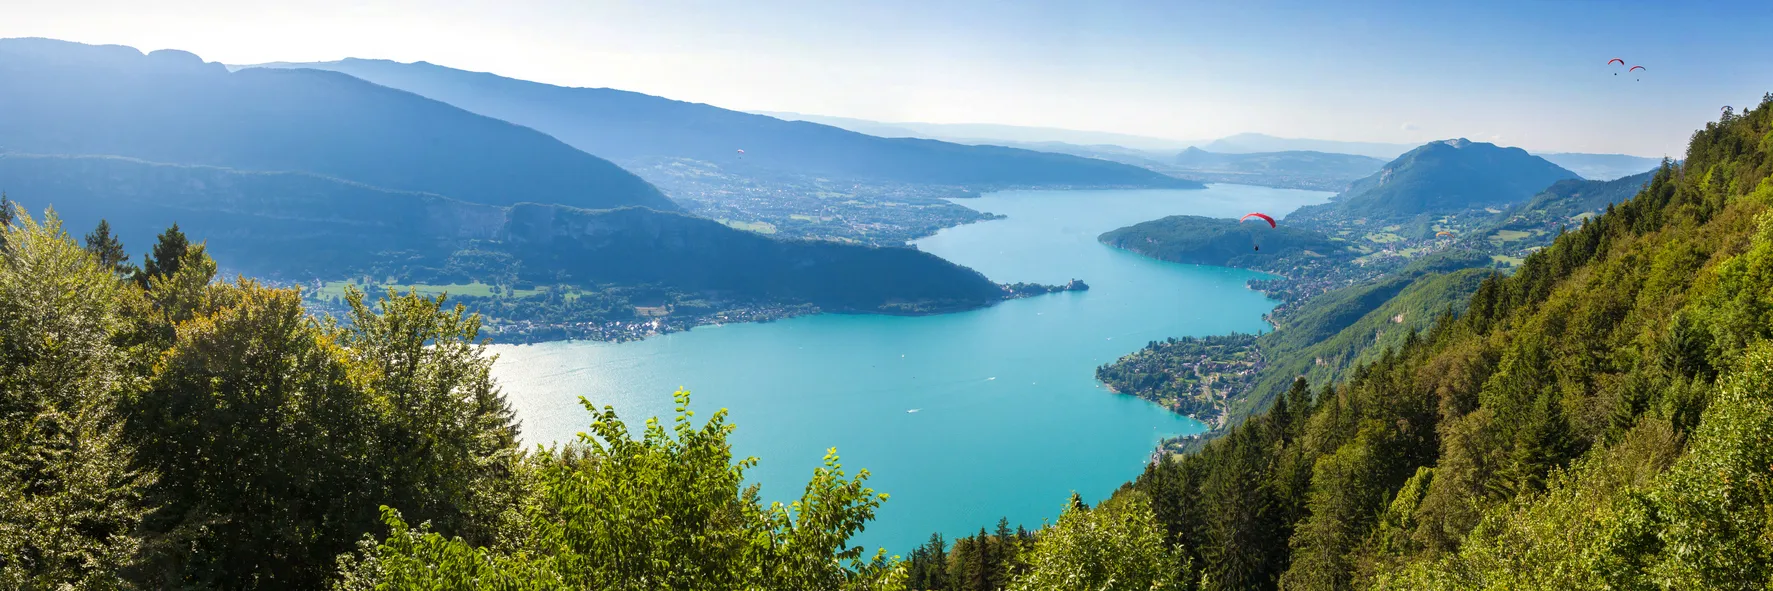 Le lac d'Annecy vu depuis le  Col du Forclaz © iStock / sam74100